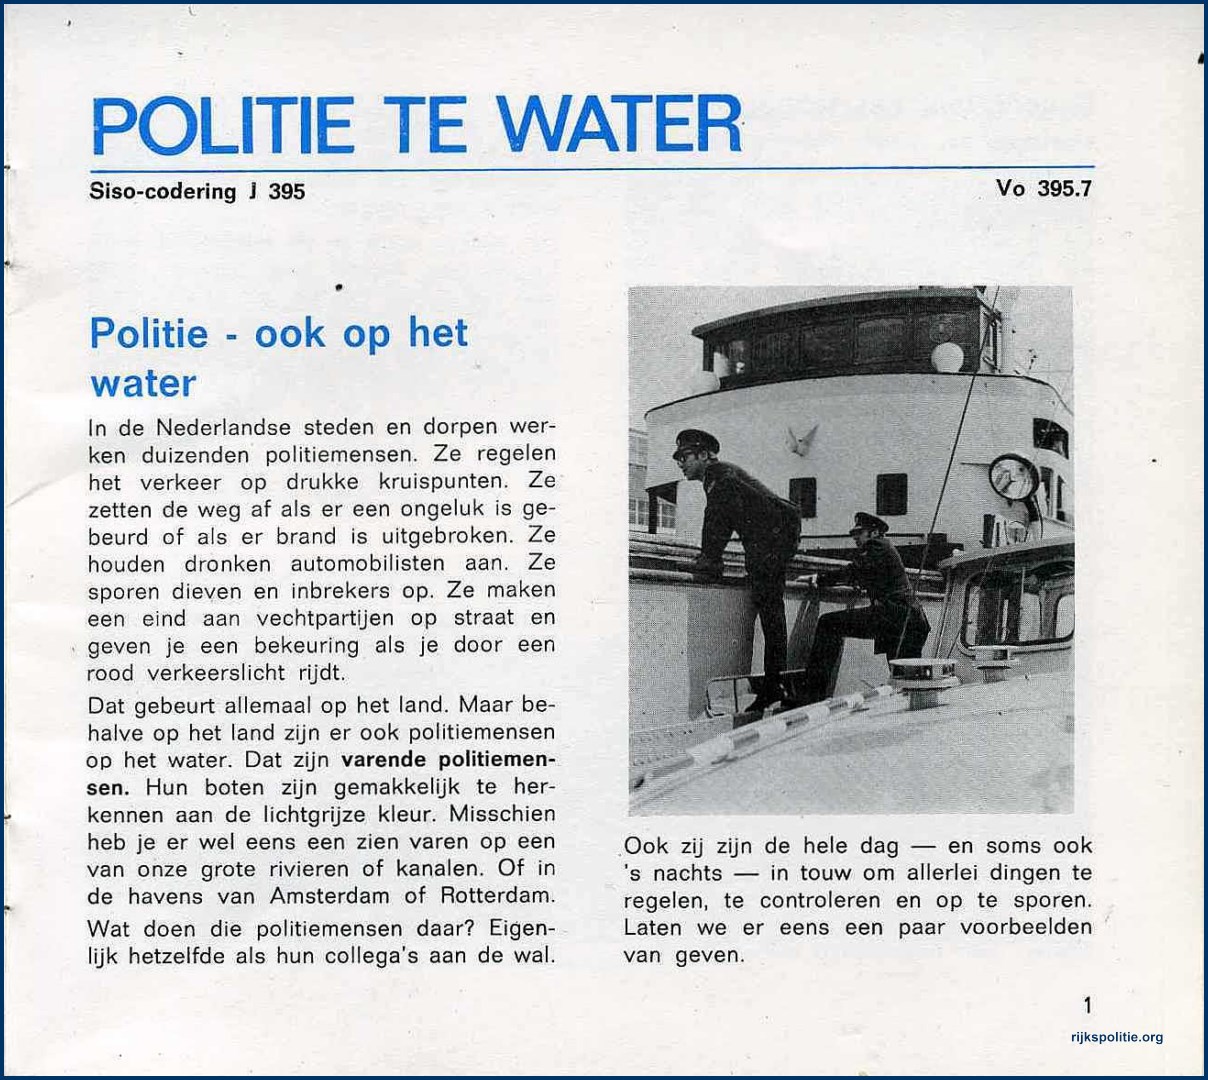 RPtW Voorlichting Boekje politie te water 01 (V)